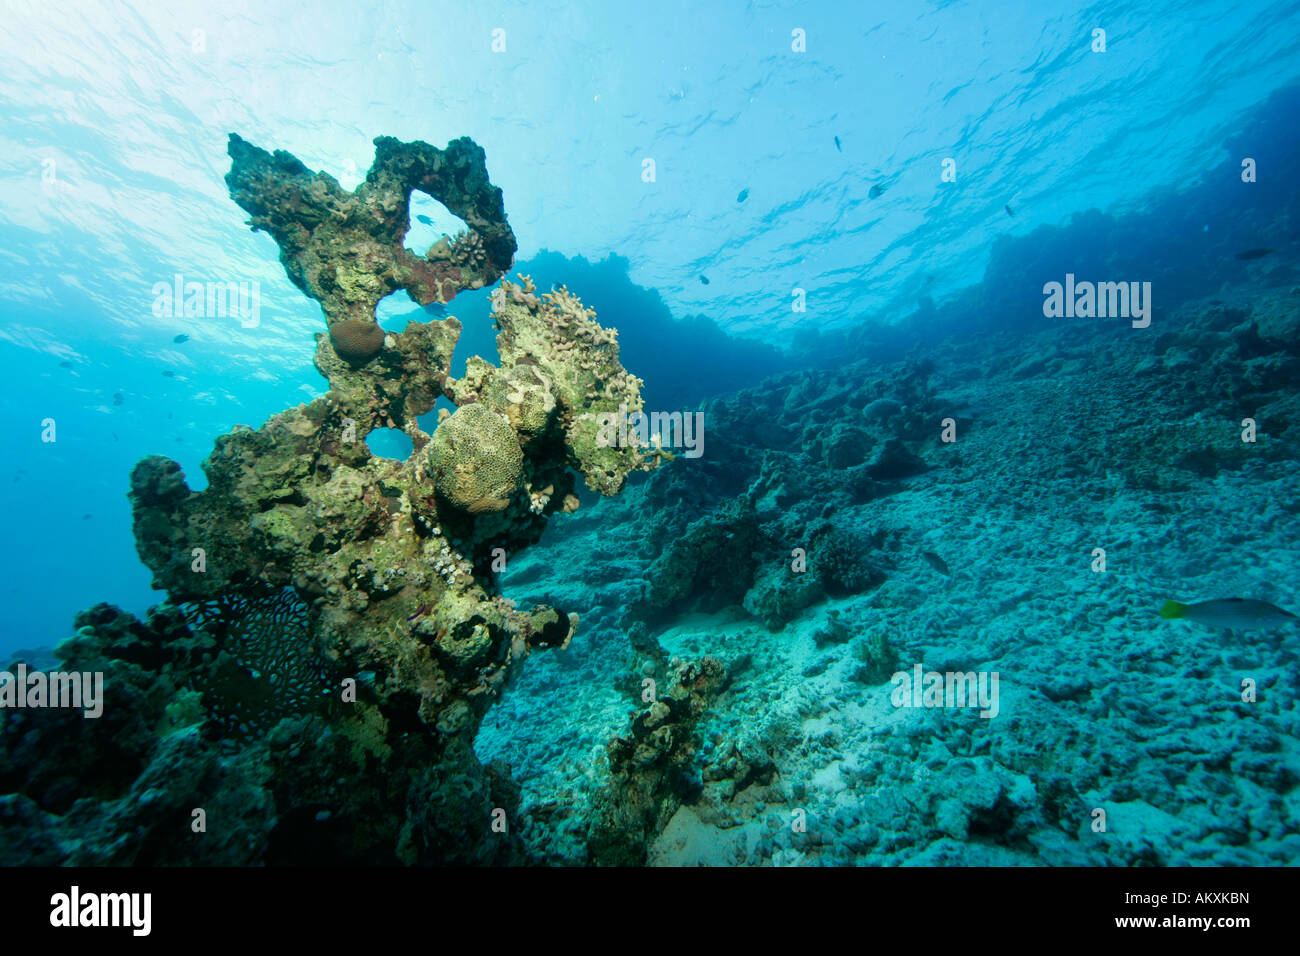 Les récifs coralliens morts, détruit les coraux, causée par les vagues. Banque D'Images